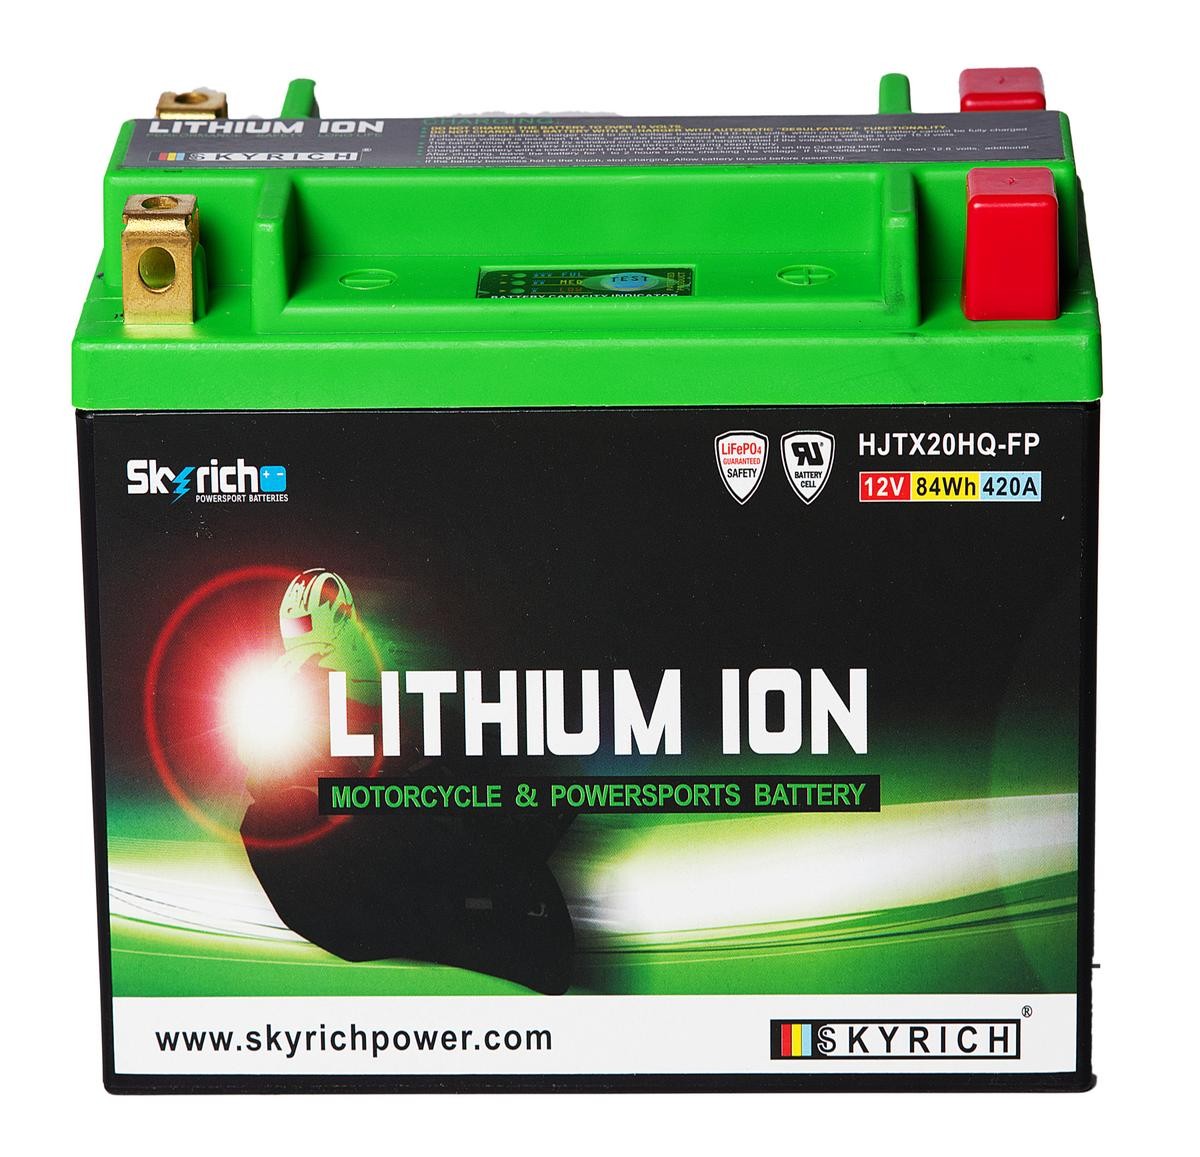 HARLEY-DAVIDSON DYNA Batterie 12V 7Ah 420A N Li-Ionen-Batterie SKYRICH LITHIUM ION HJTX20HQ-FP